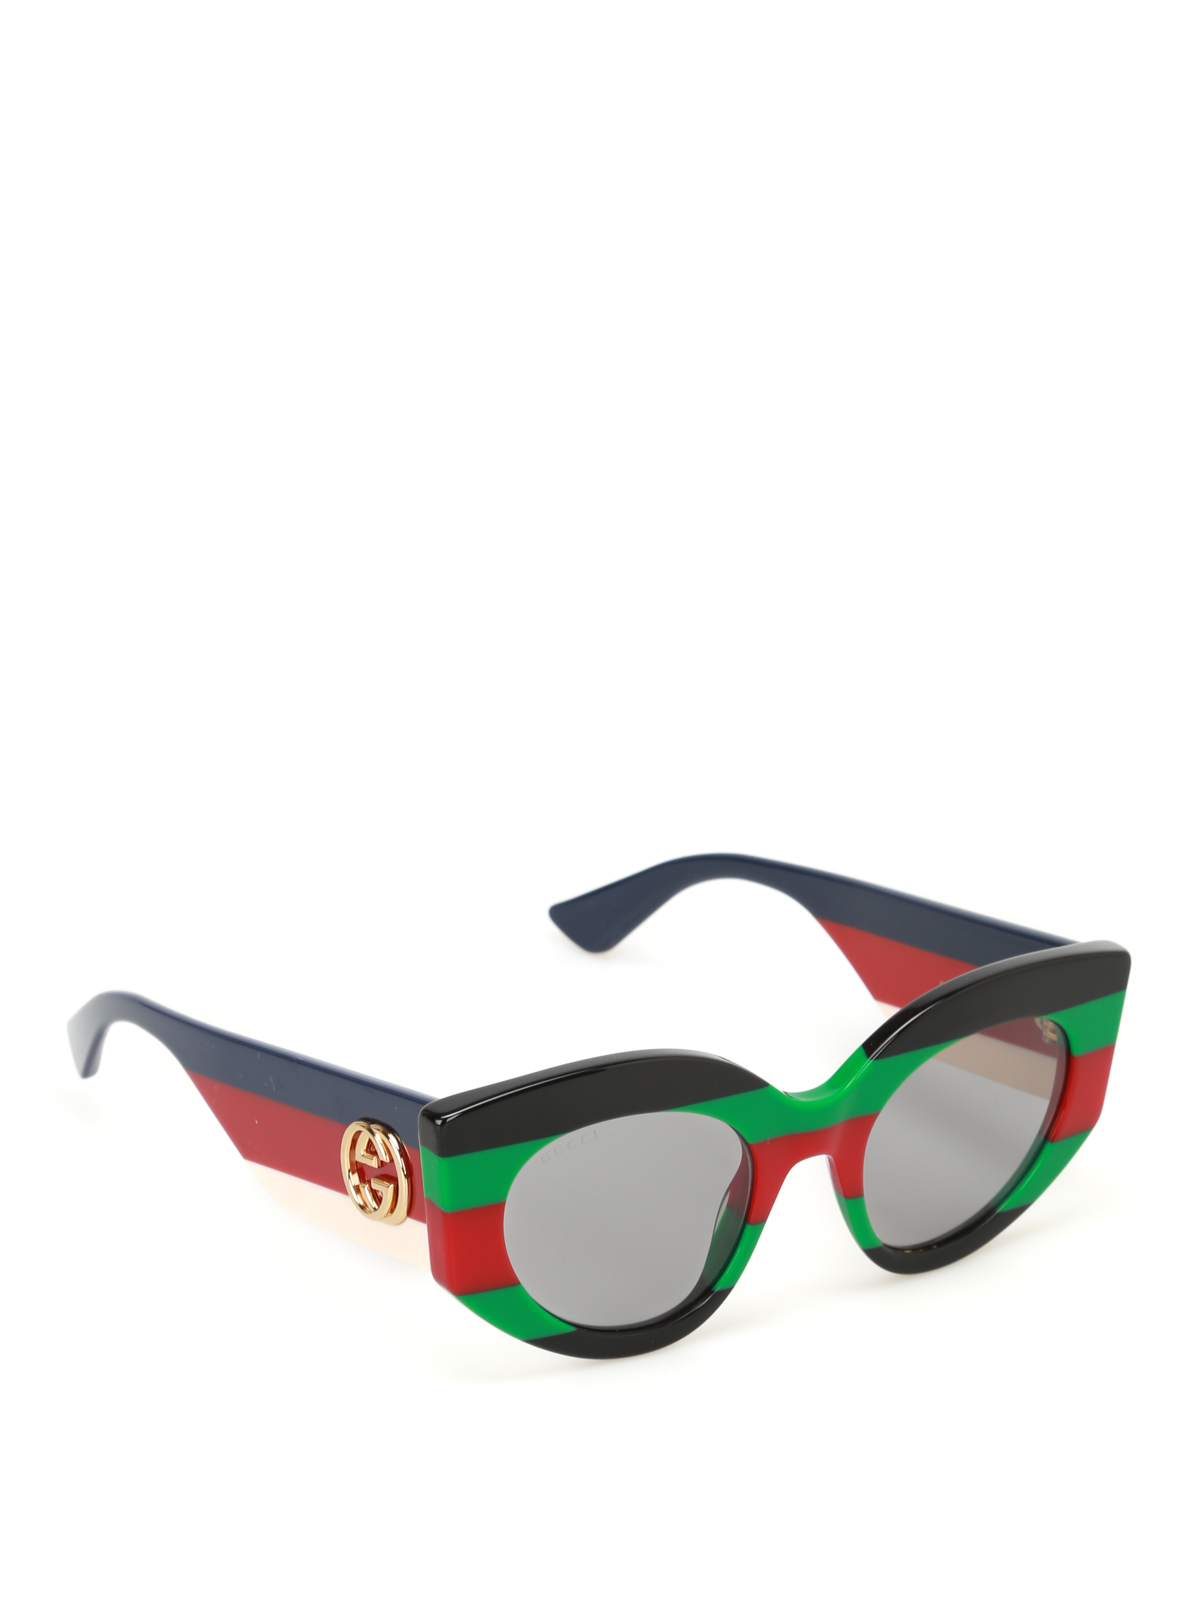 Gucci - Multicolour striped sunglasses 